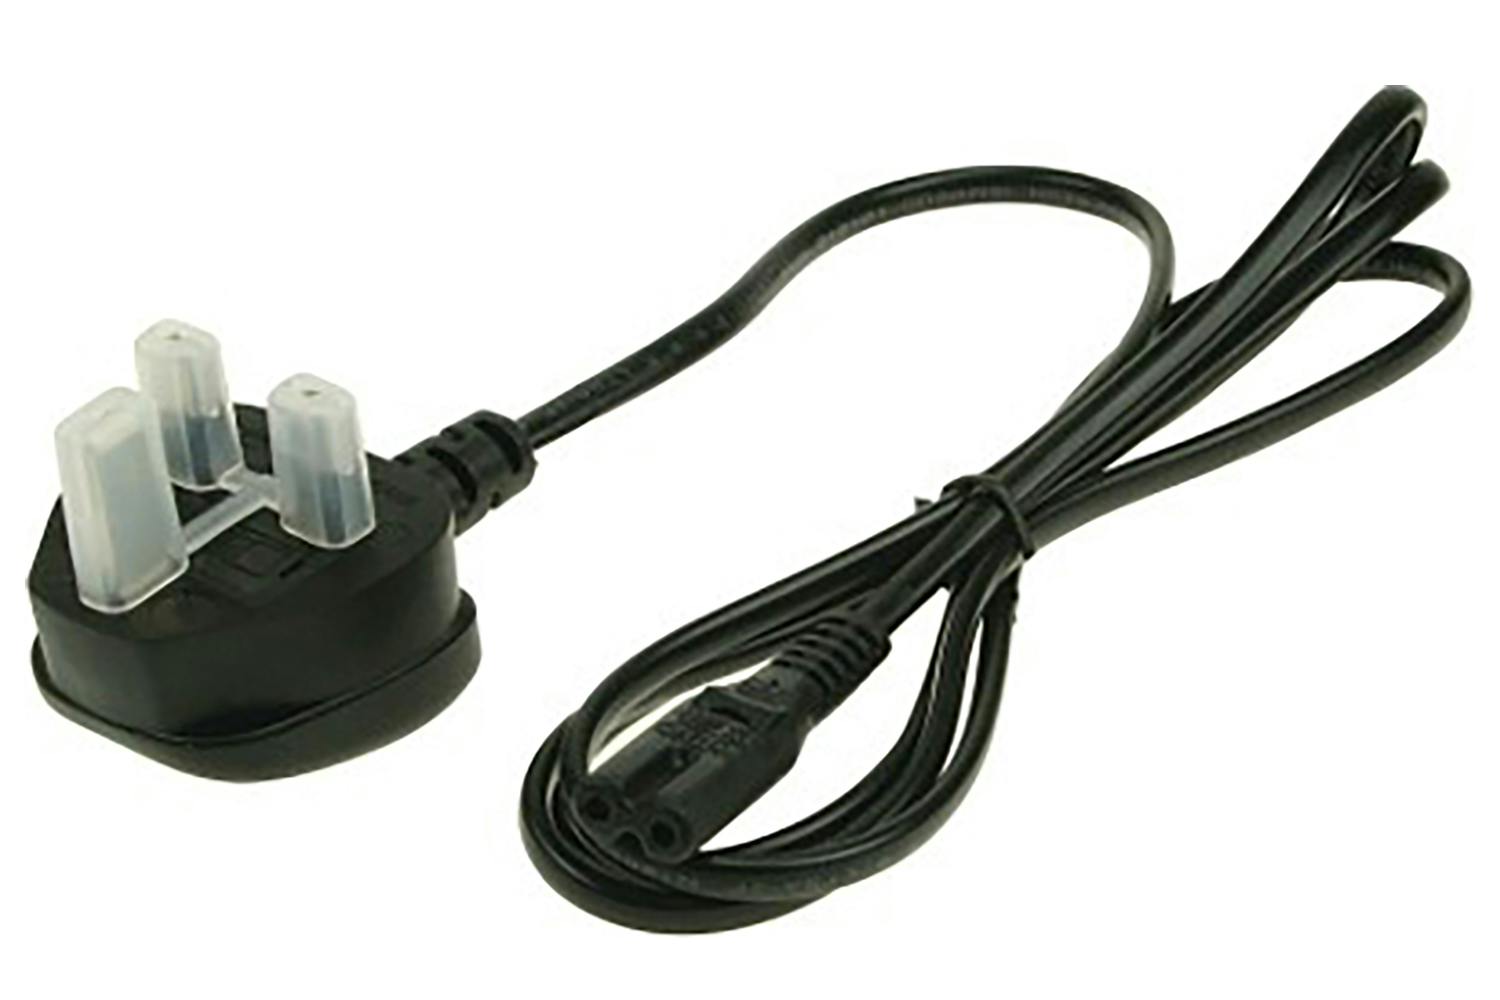 2-Power AC Mains Lead Fig 8 UK Plug (Black)